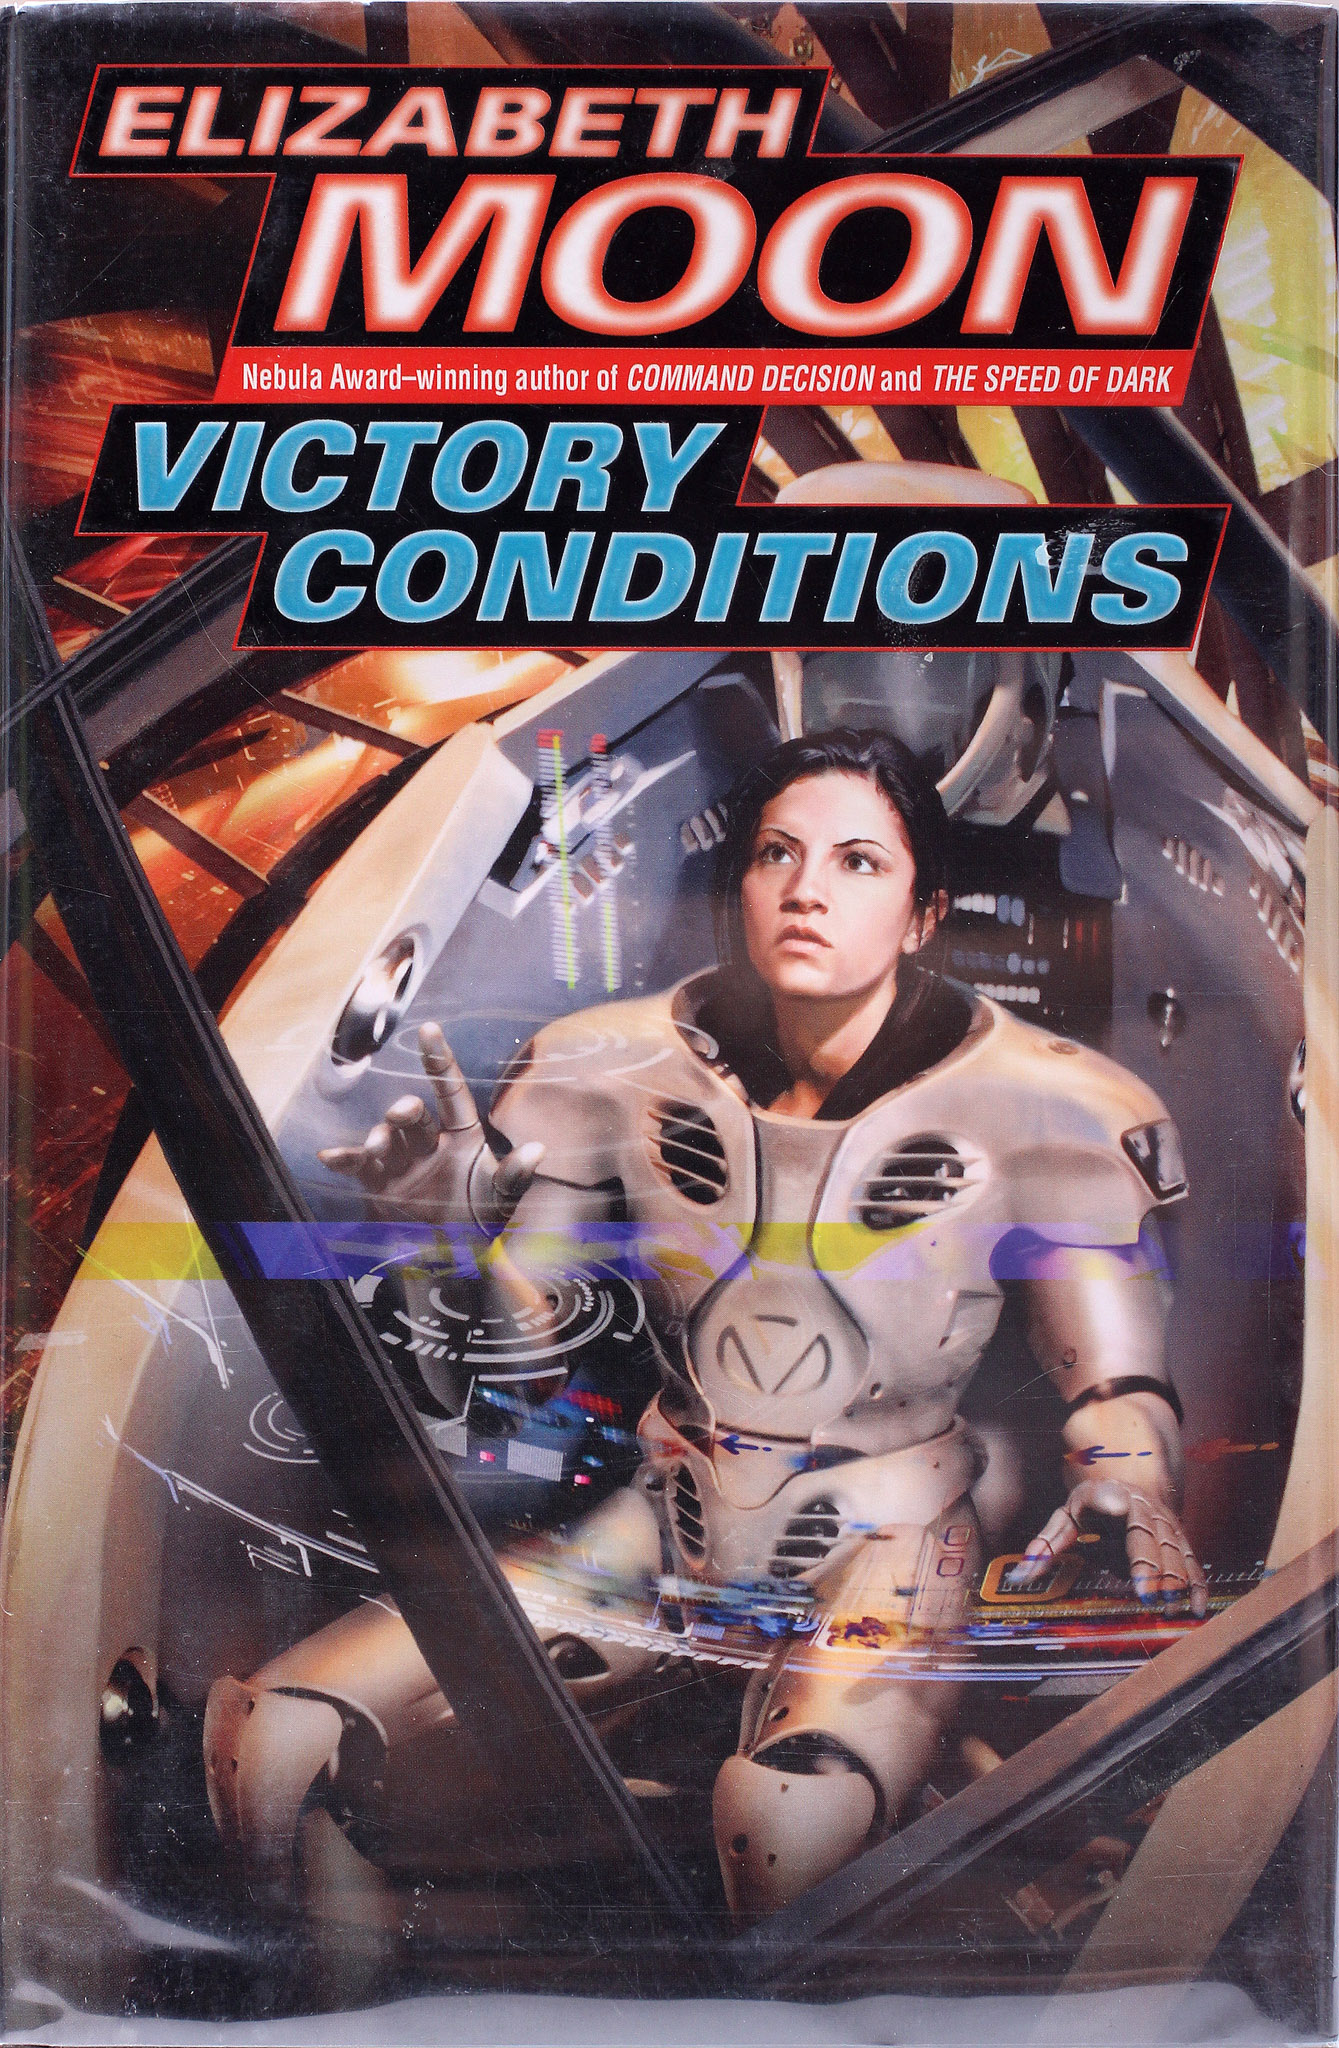 Elizabeth Moon: Victory Conditions (2008, Del Rey)